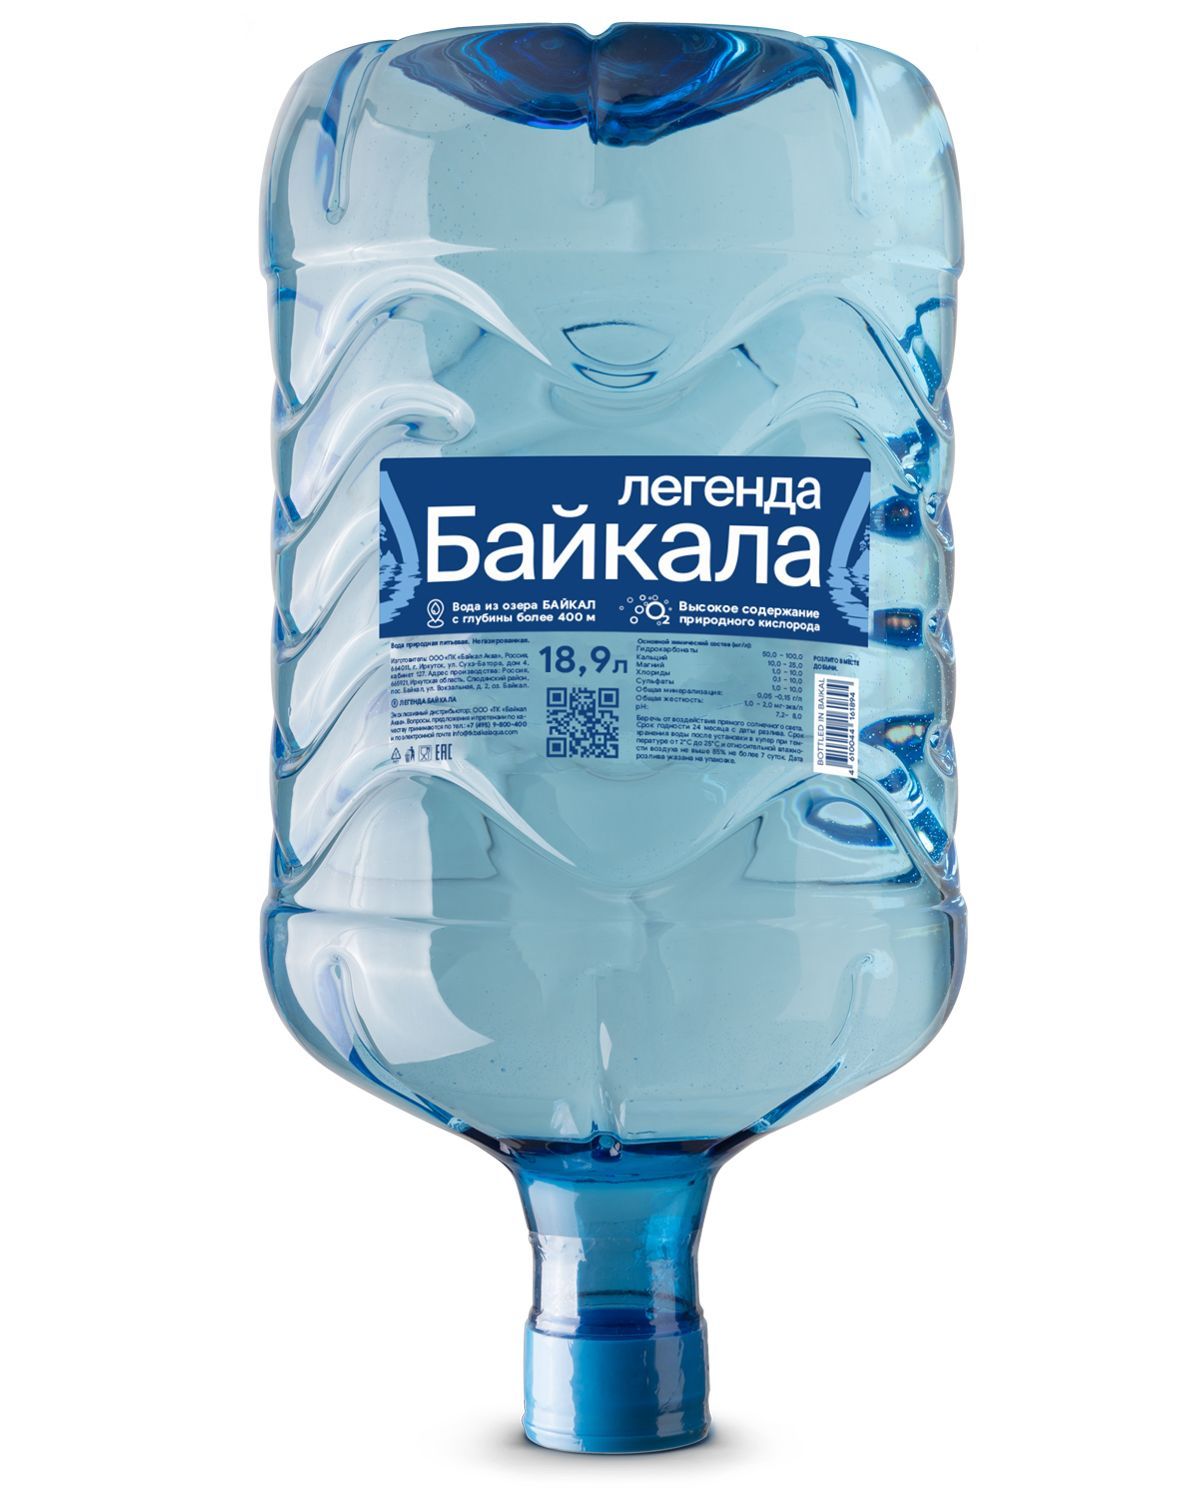 Legend of Baikal вода